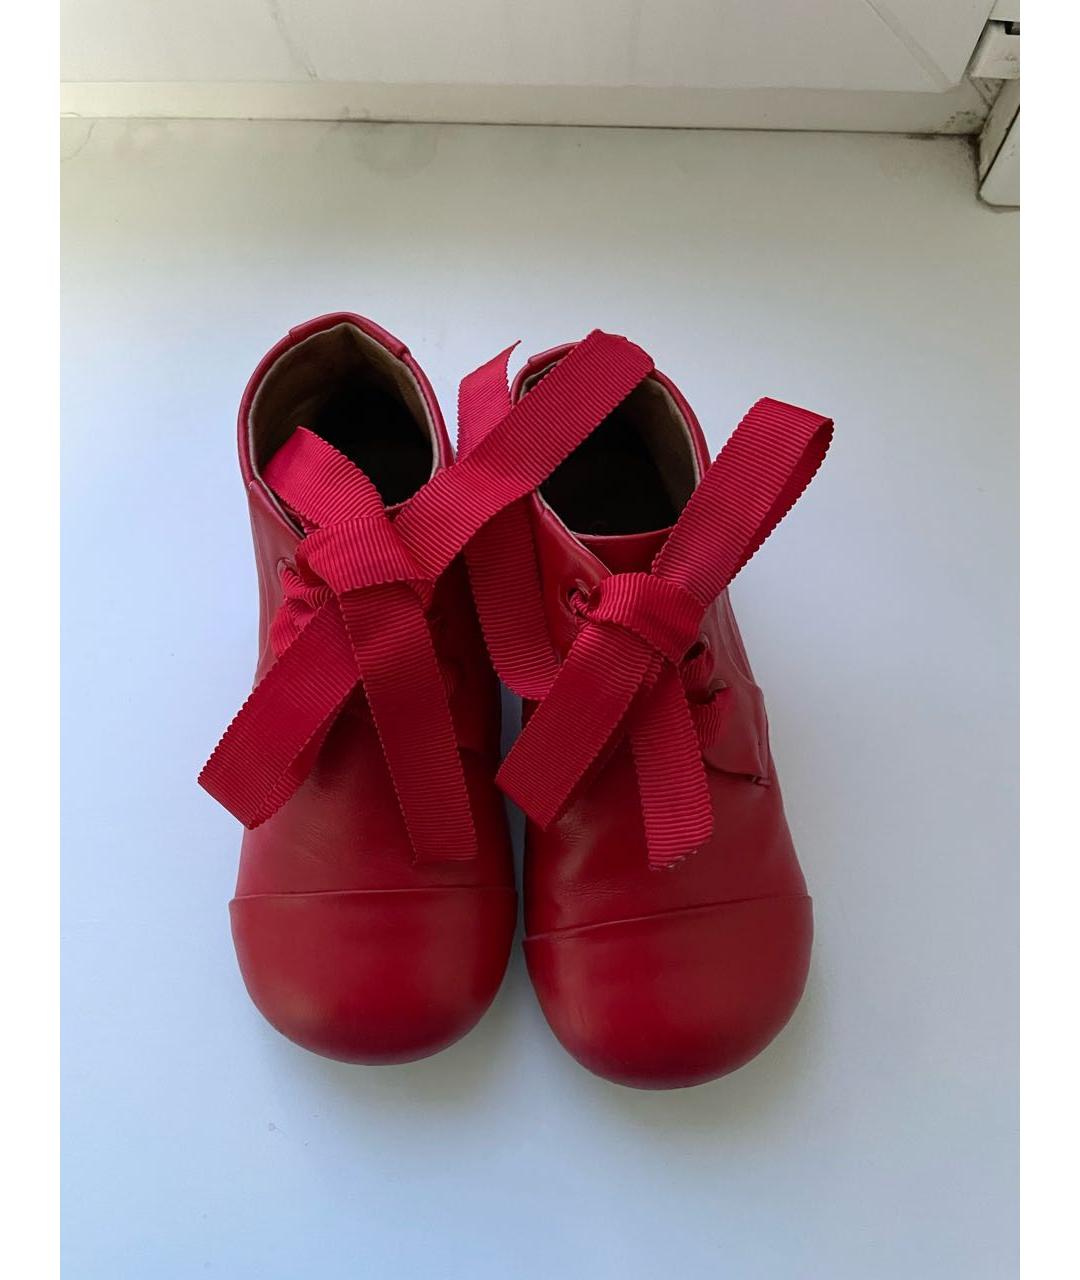 Age Of Innocence Красные кожаные ботинки, фото 2